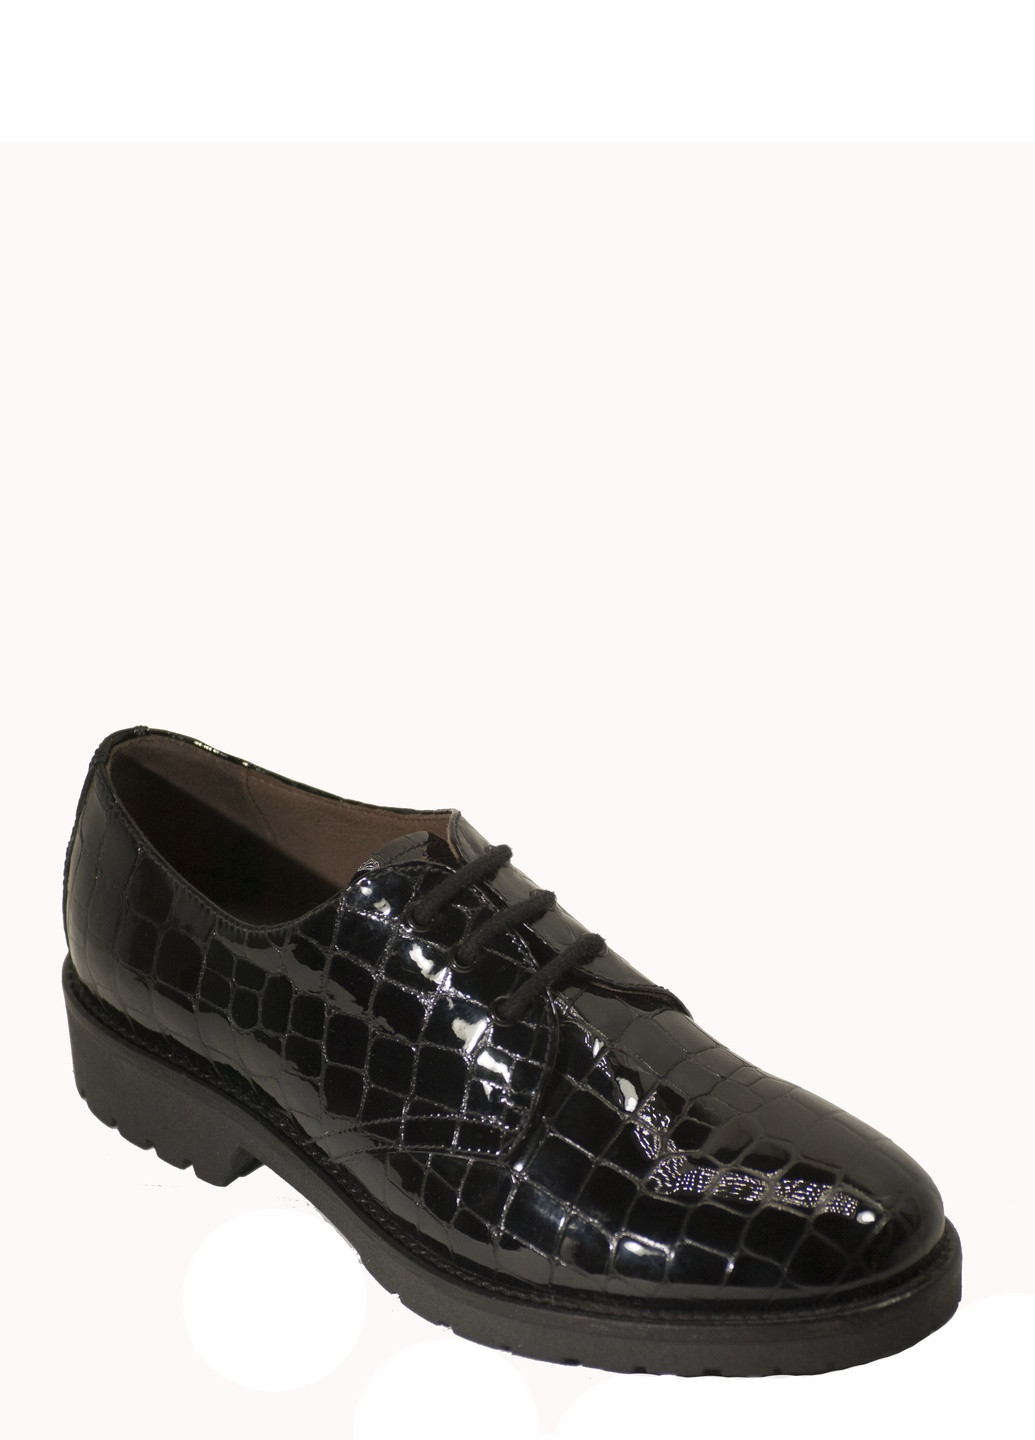 Туфли Nero Giardini на низком каблуке лаковые, с тиснением, со шнуровкой